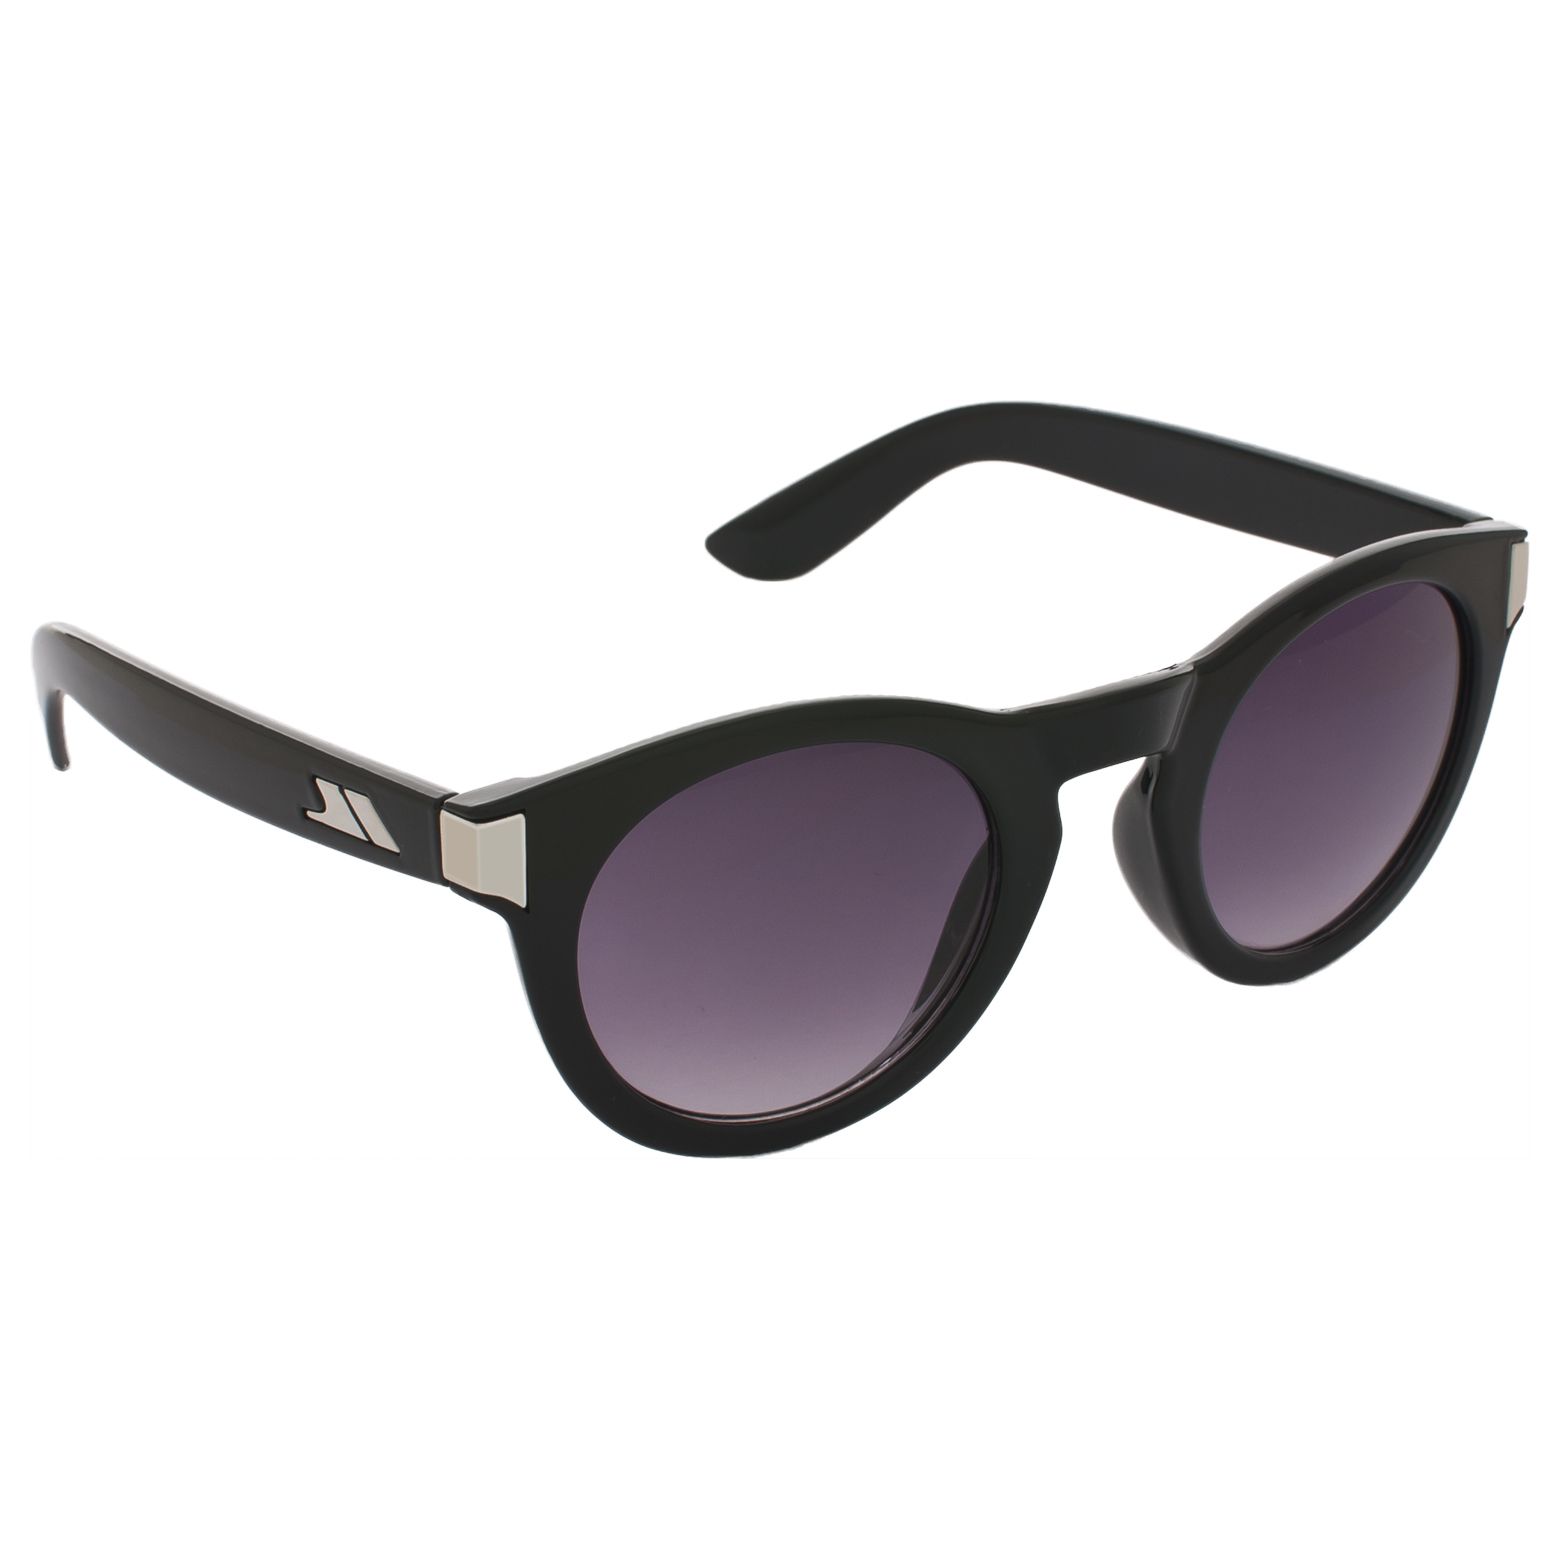 Clarendon Unisex Sunglasses